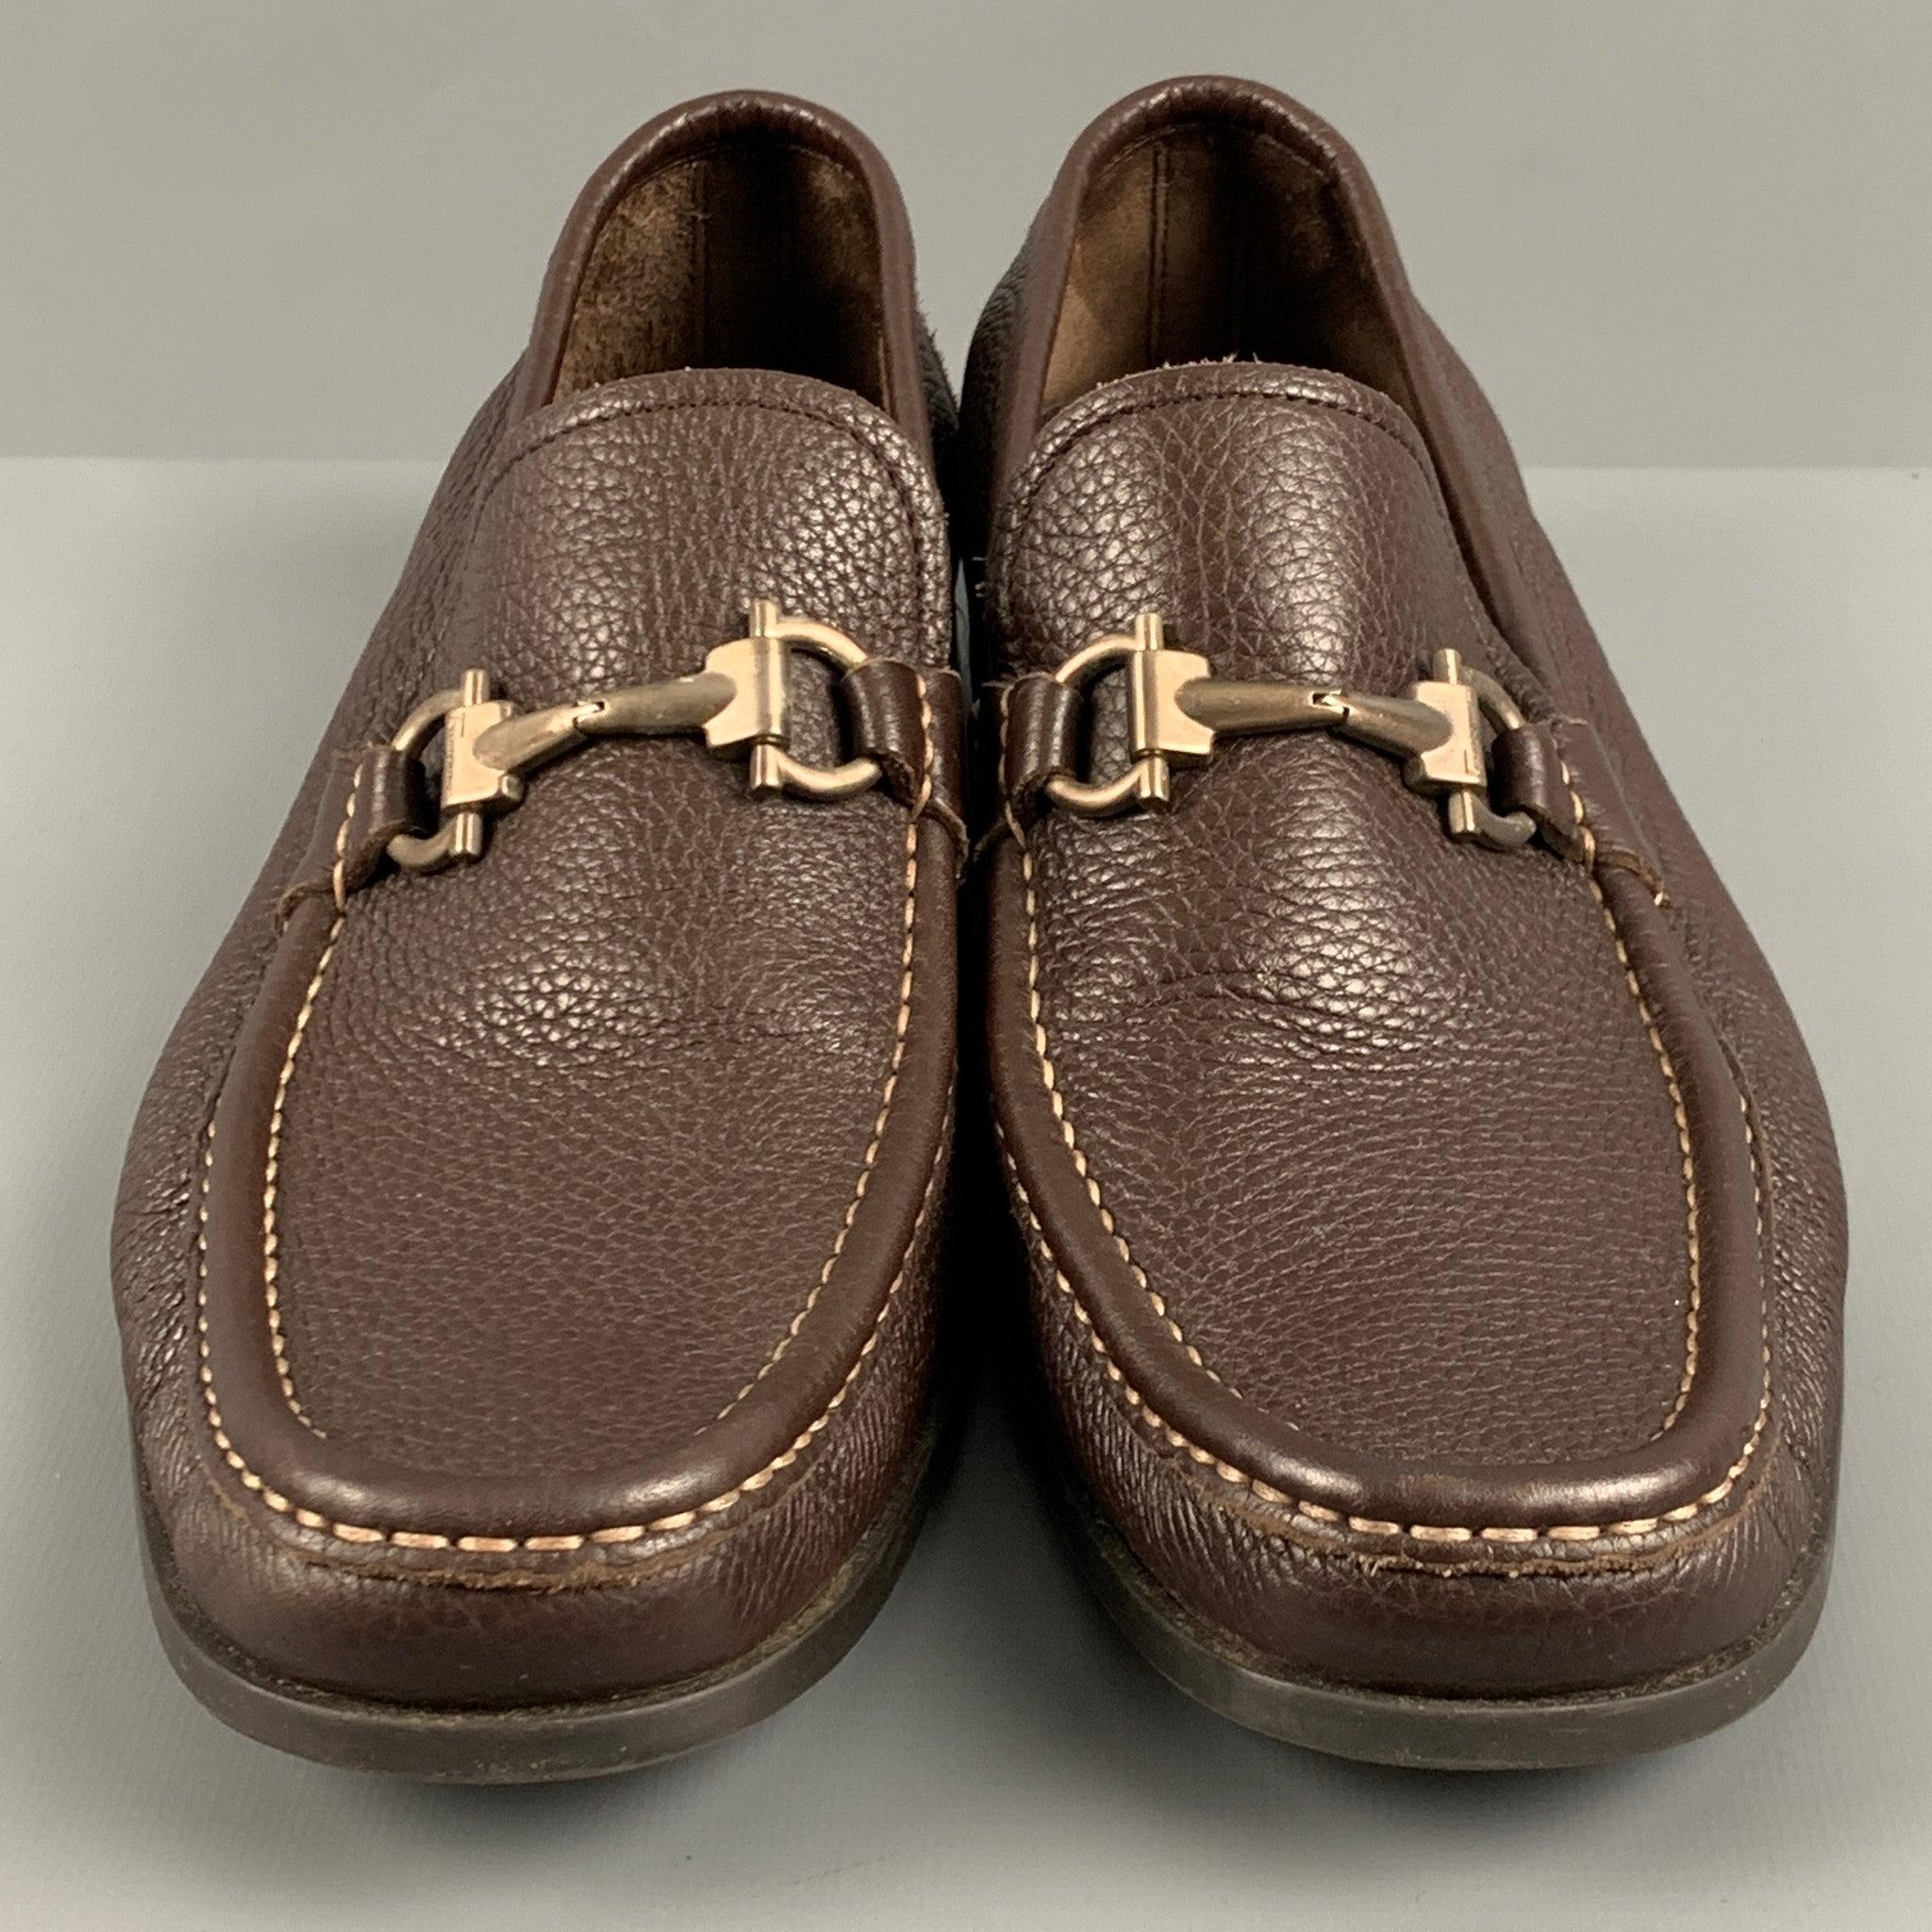 Men's SALVATORE FERRAGAMO Size 9.5 Brown Leather Loafers